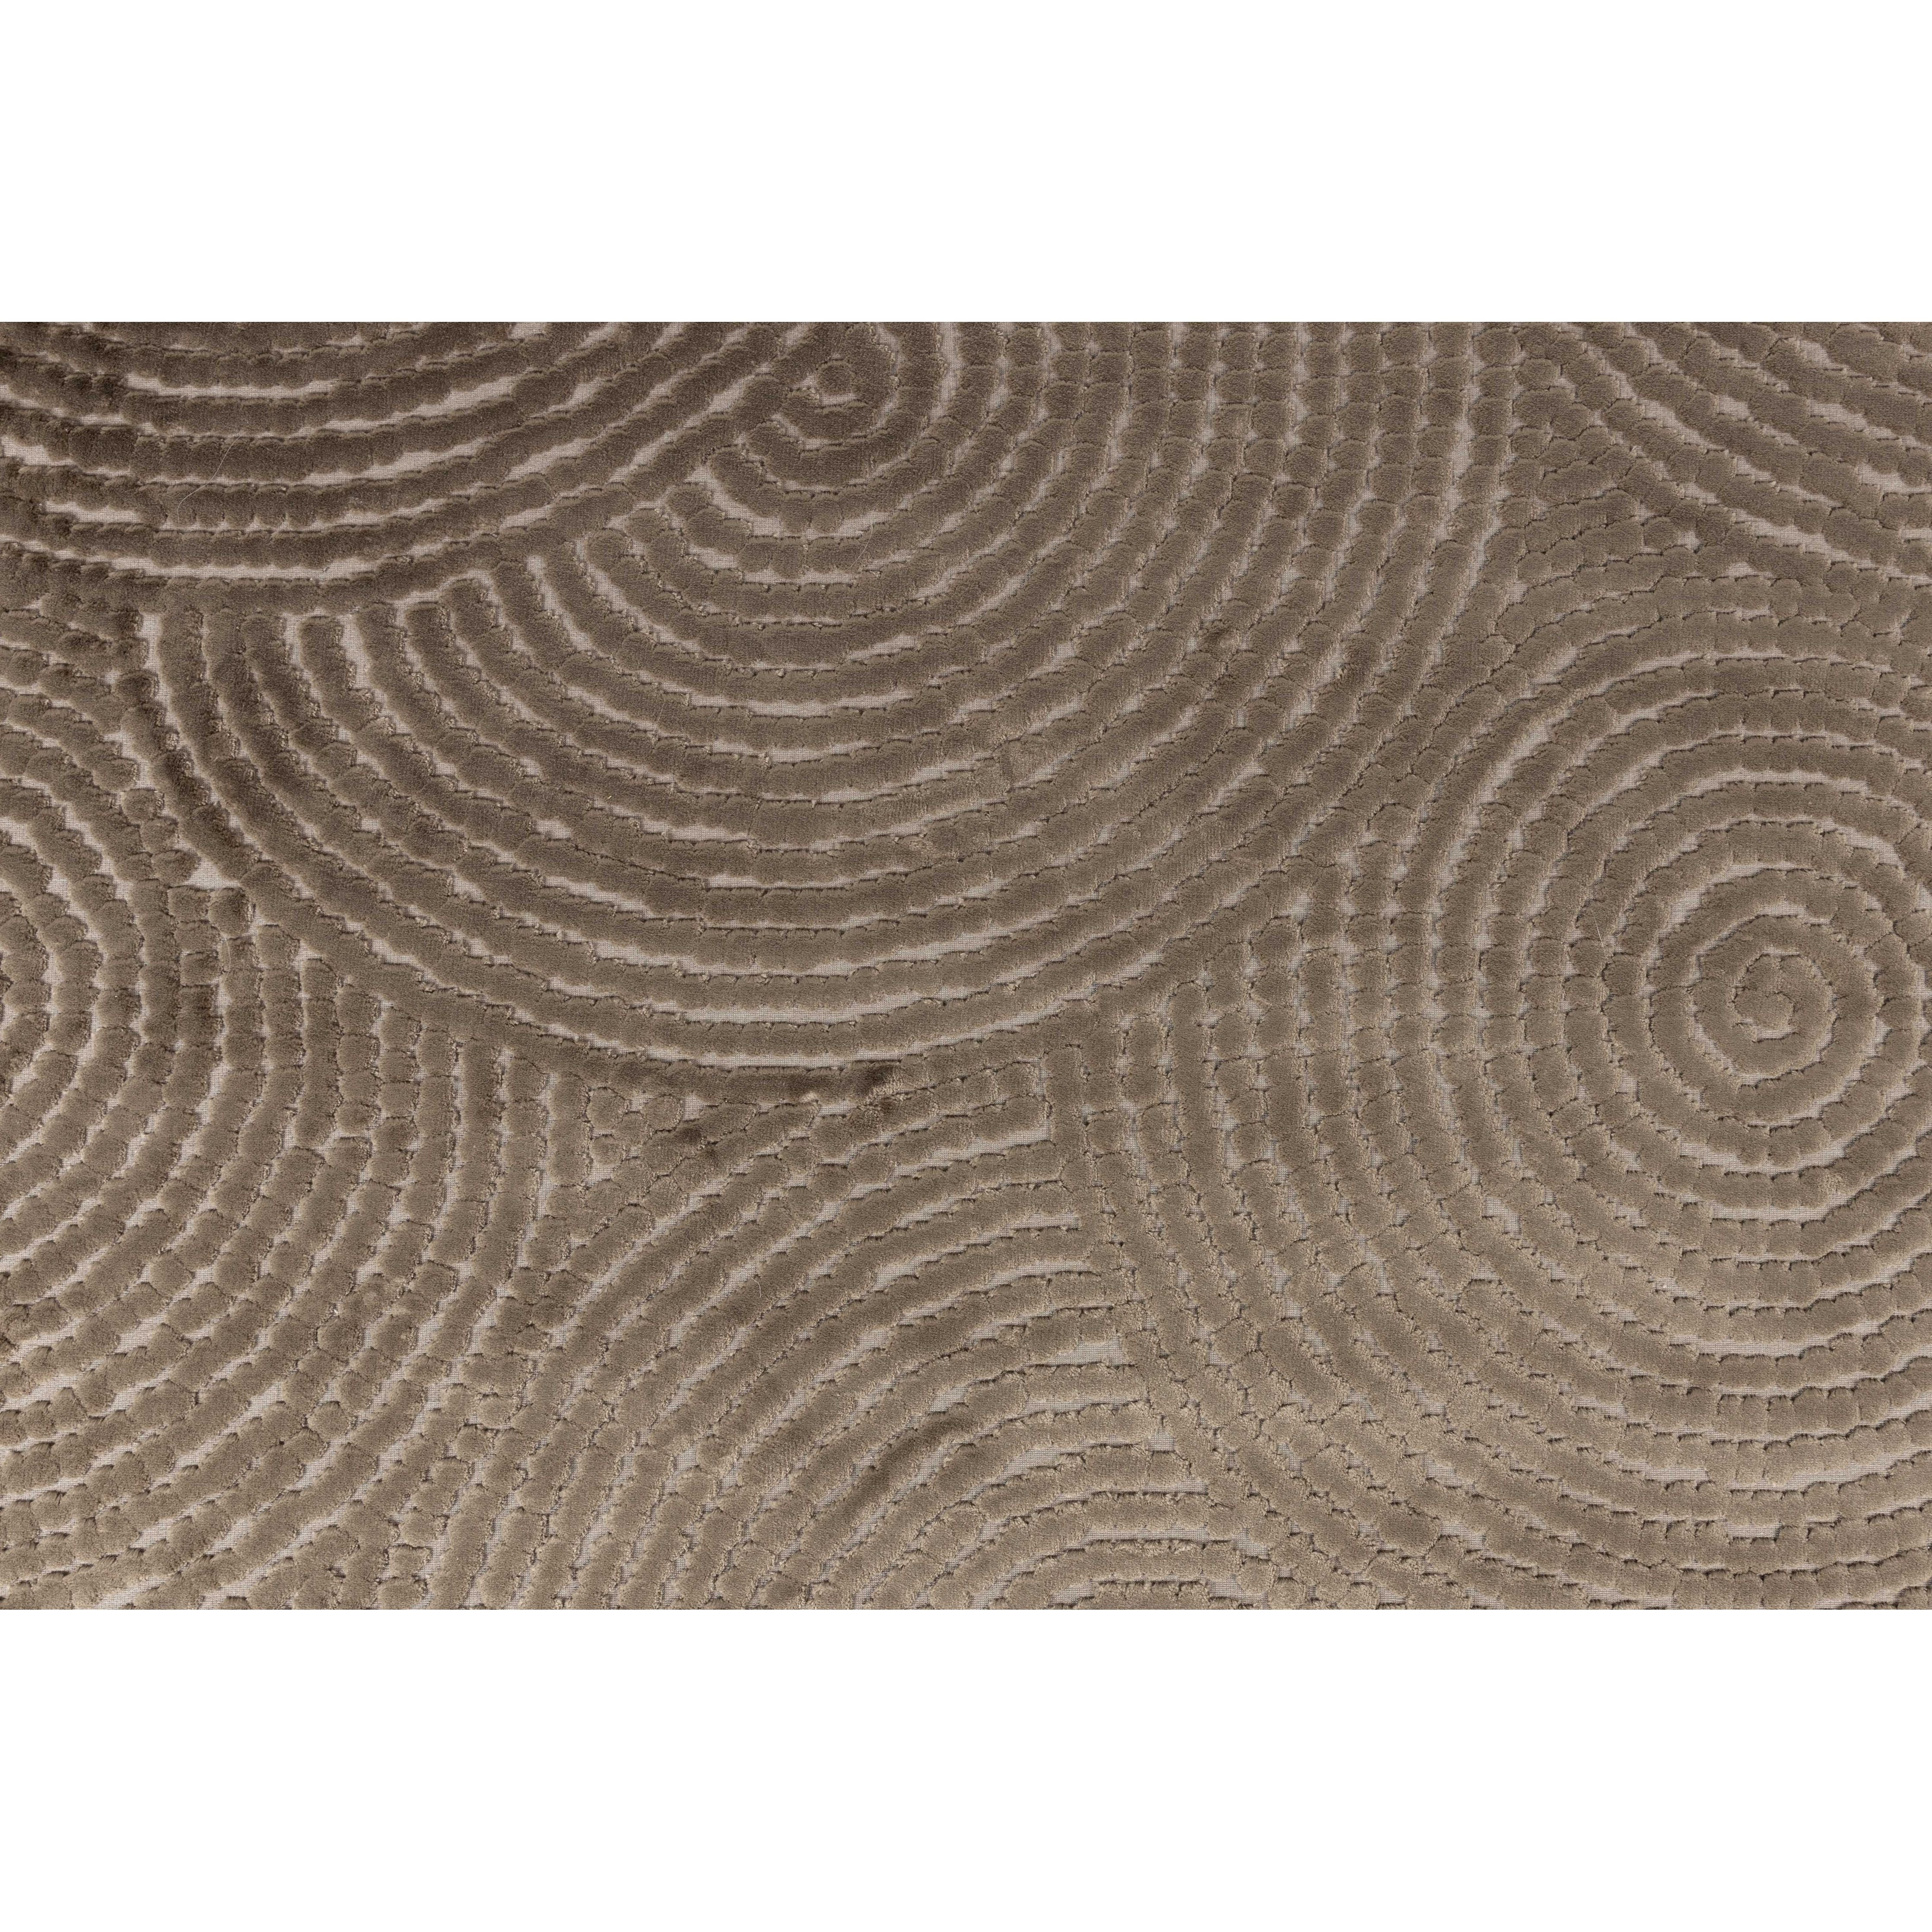 Carpet dots 170x240 caramel brown